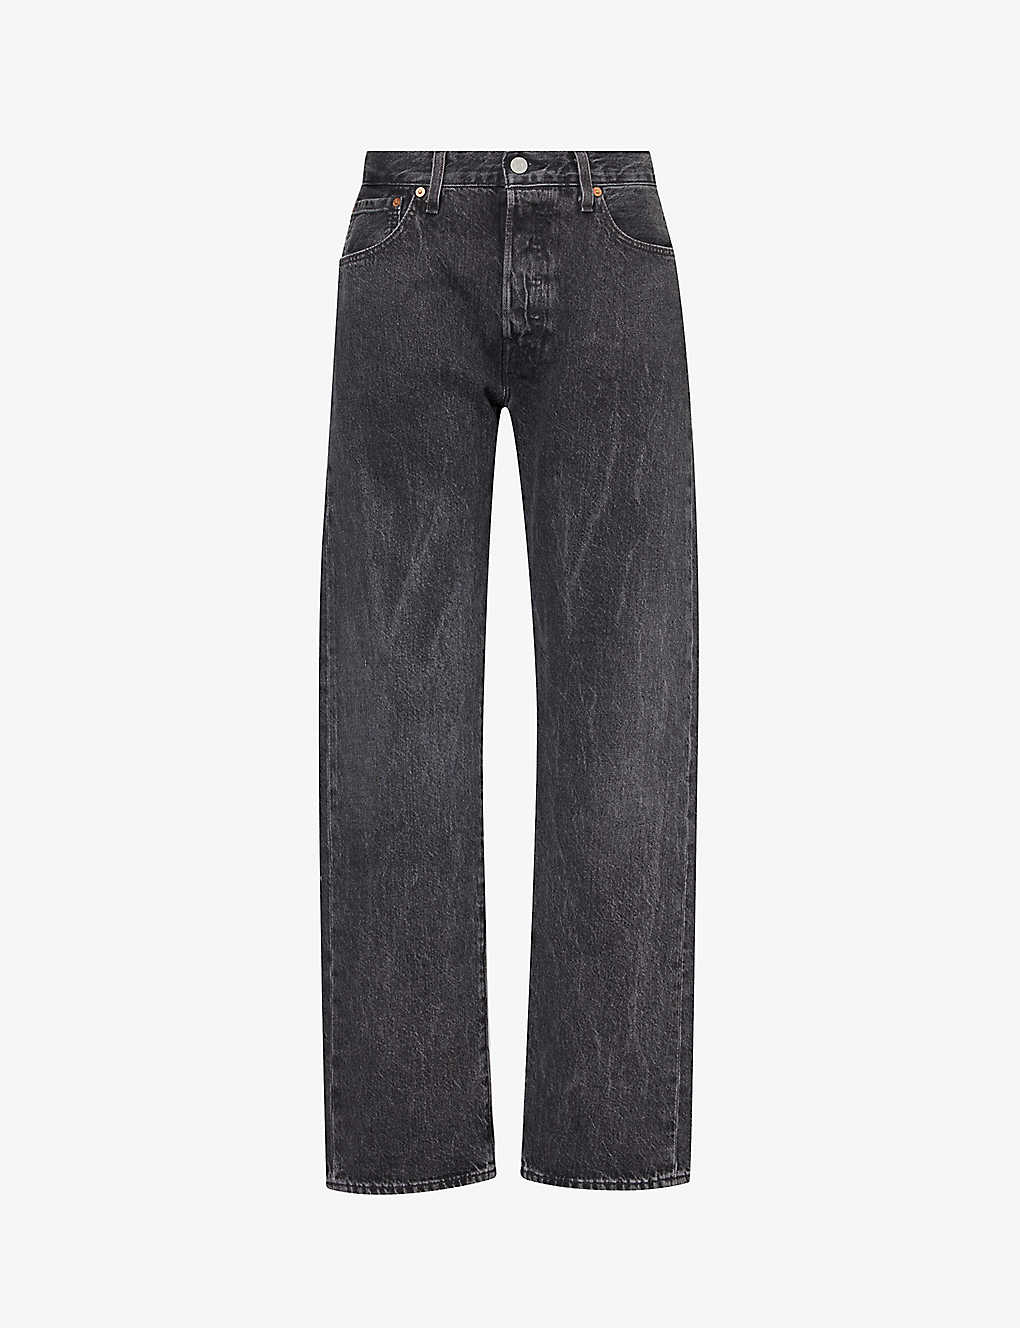 Shop Levi's Levis Mens Crash Courses 501 Faded-wash Straight-leg Regular-fit Jeans